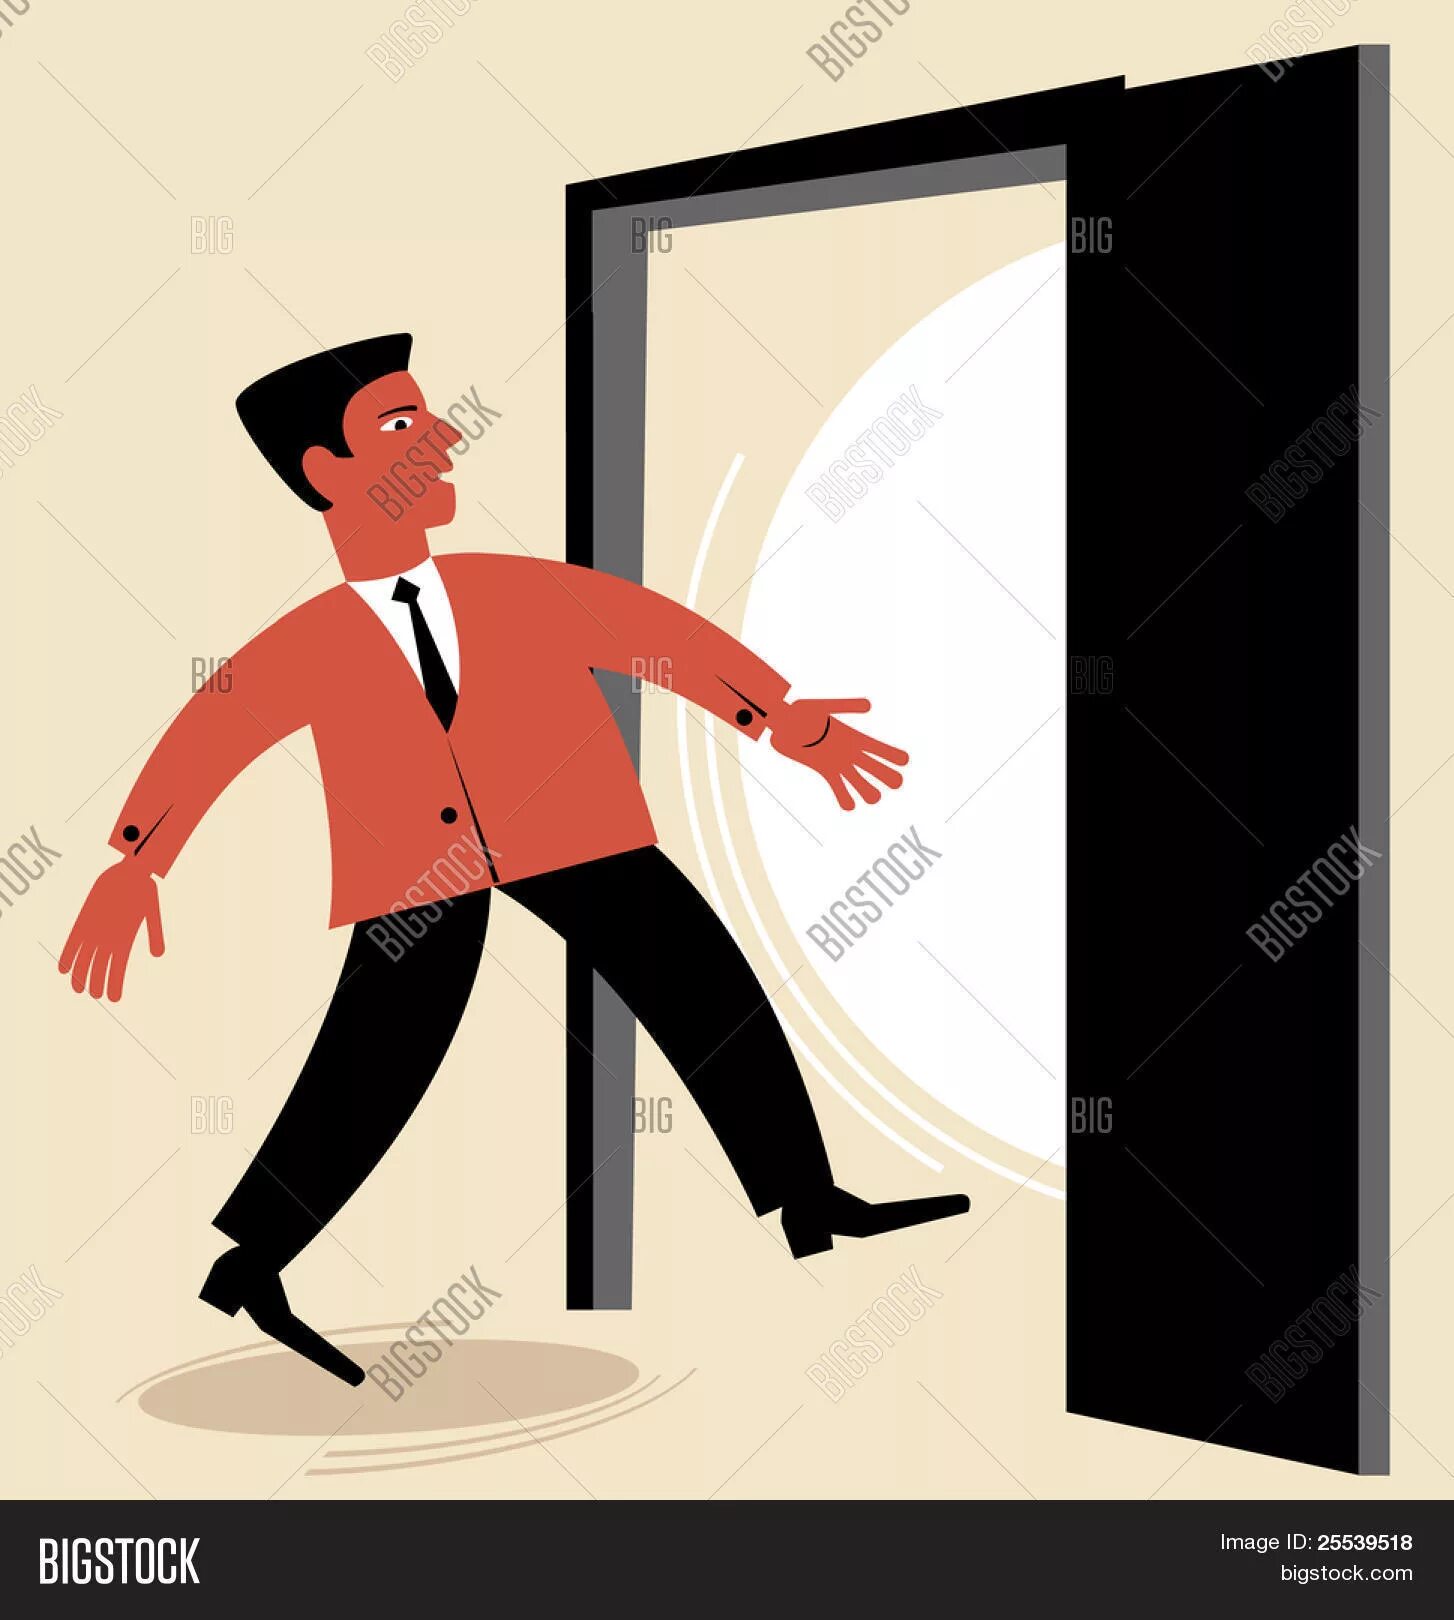 Человек заходит в дверь. Человечек выходящий в дверь. Человек выходит из двери. Человечек выходит из двери.